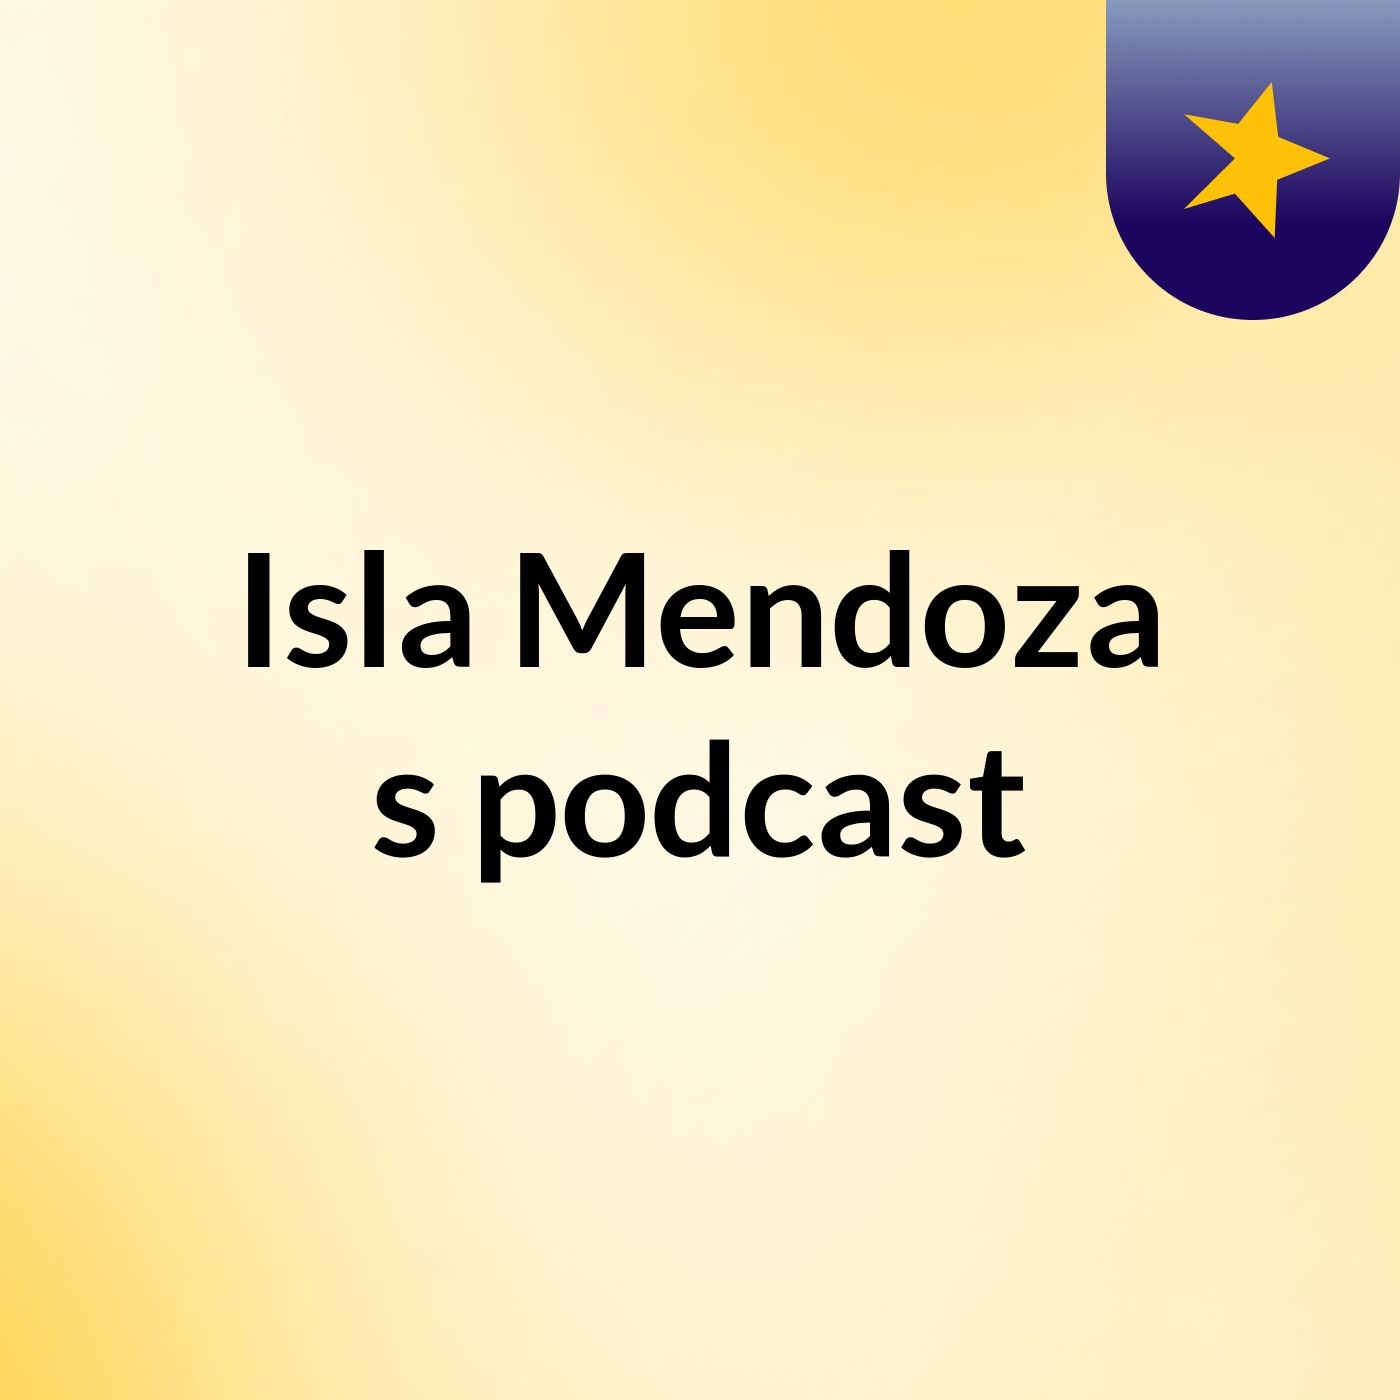 Isla Mendoza's podcast